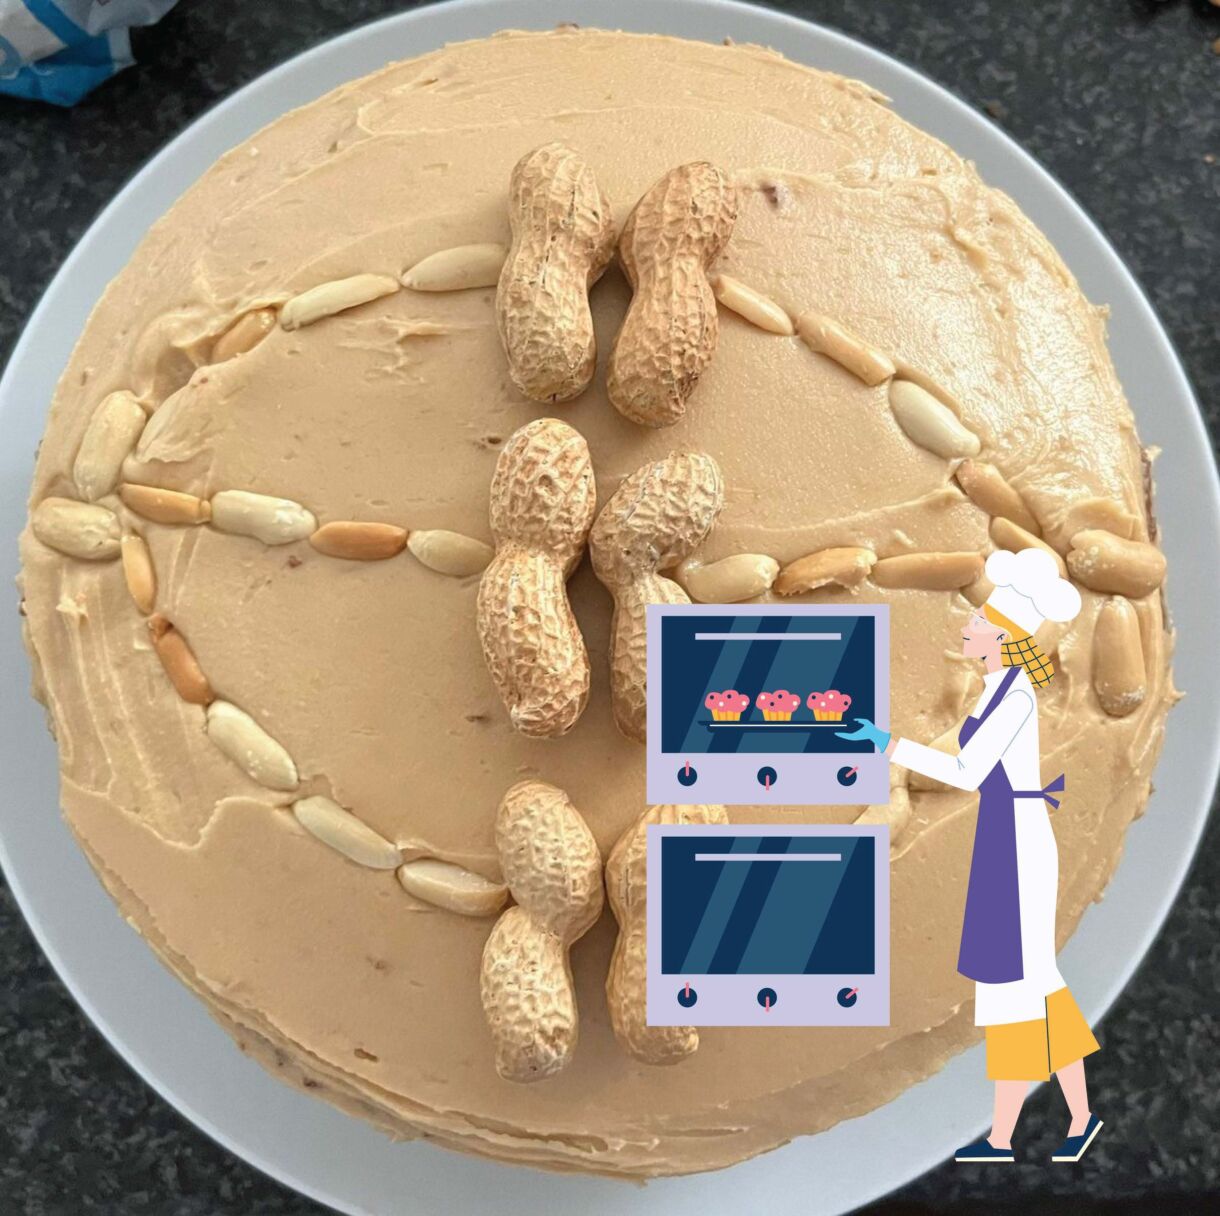 Cake and scientist peanut